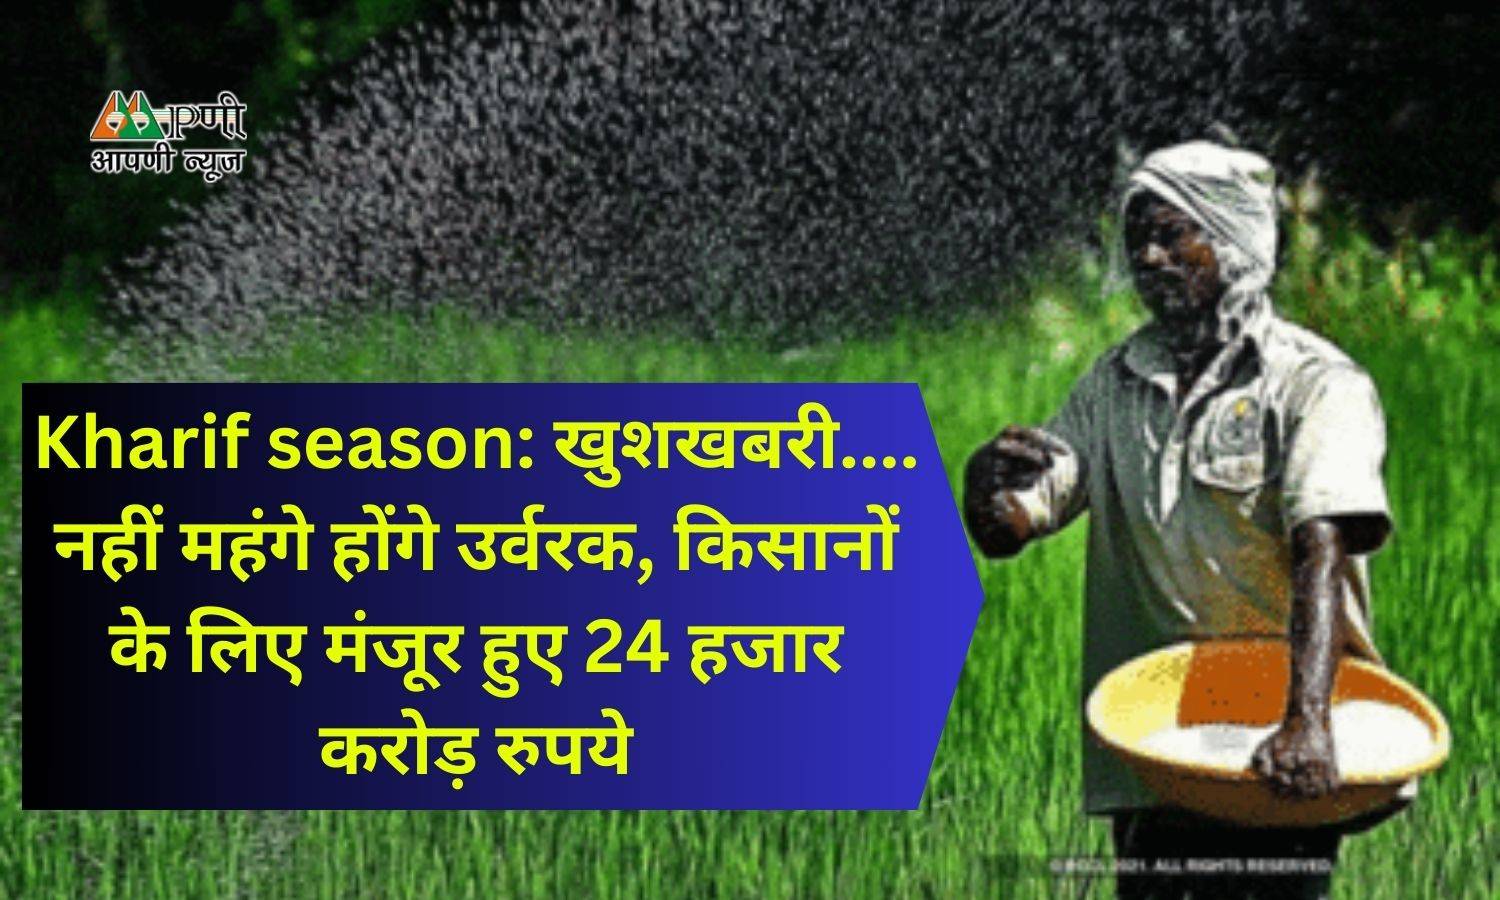 Kharif season: खुशखबरी.... नहीं महंगे होंगे उर्वरक, किसानों के लिए मंजूर हुए 24 हजार करोड़ रुपये